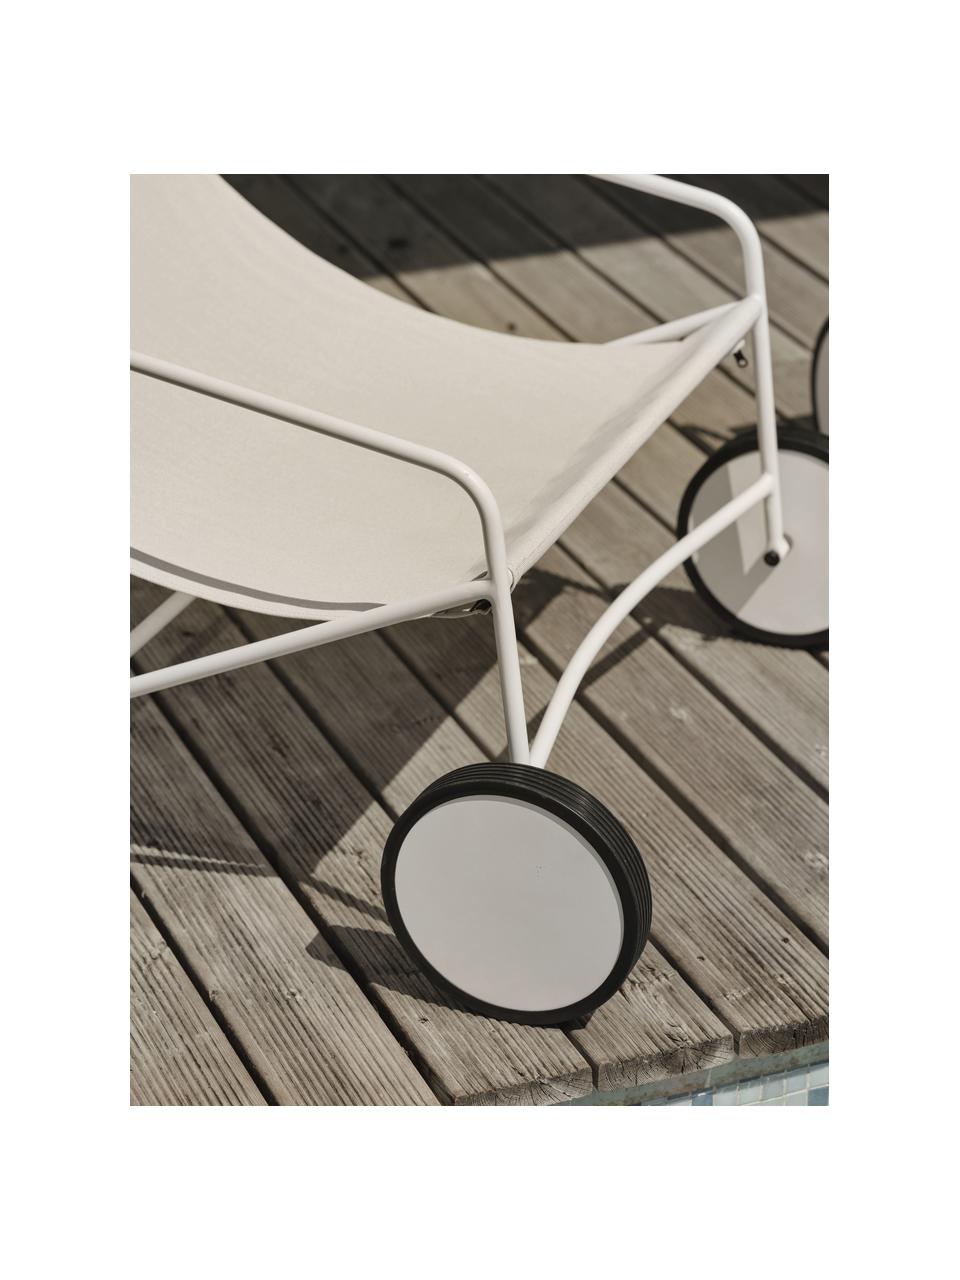 Garten-Loungesessel Poul mit Rollen, 2 Stück, Bezug: Textil, Gestell: Aluminium, beschichtet, Off White, Weiß, B 74 x T 106 cm